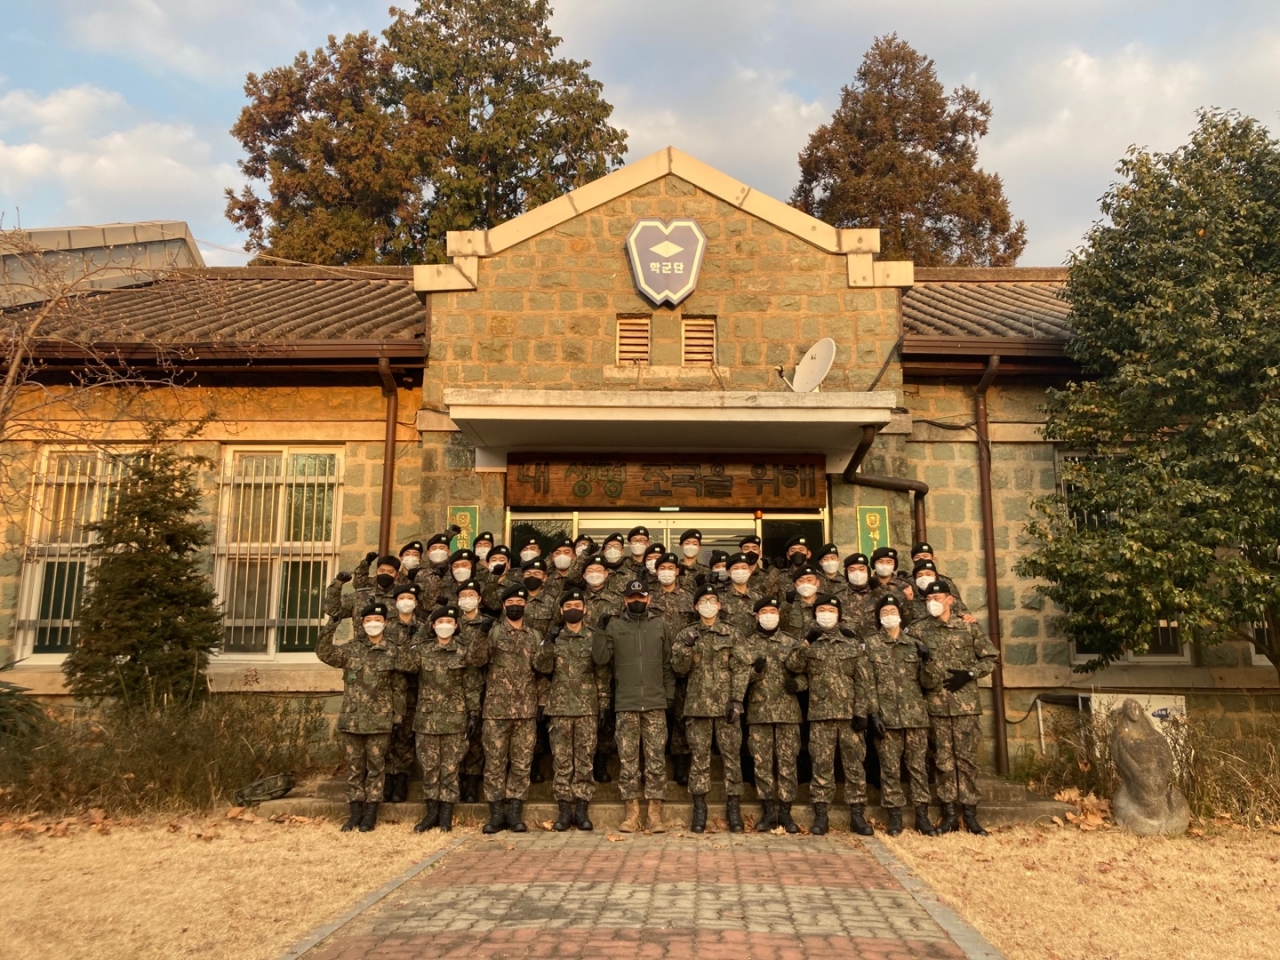 전남대 학생군사교육단(단장 송명섭, 이하 학군단)이 1961년 창설 이래 60년 만에 새로운 터전으로 이전한다. 